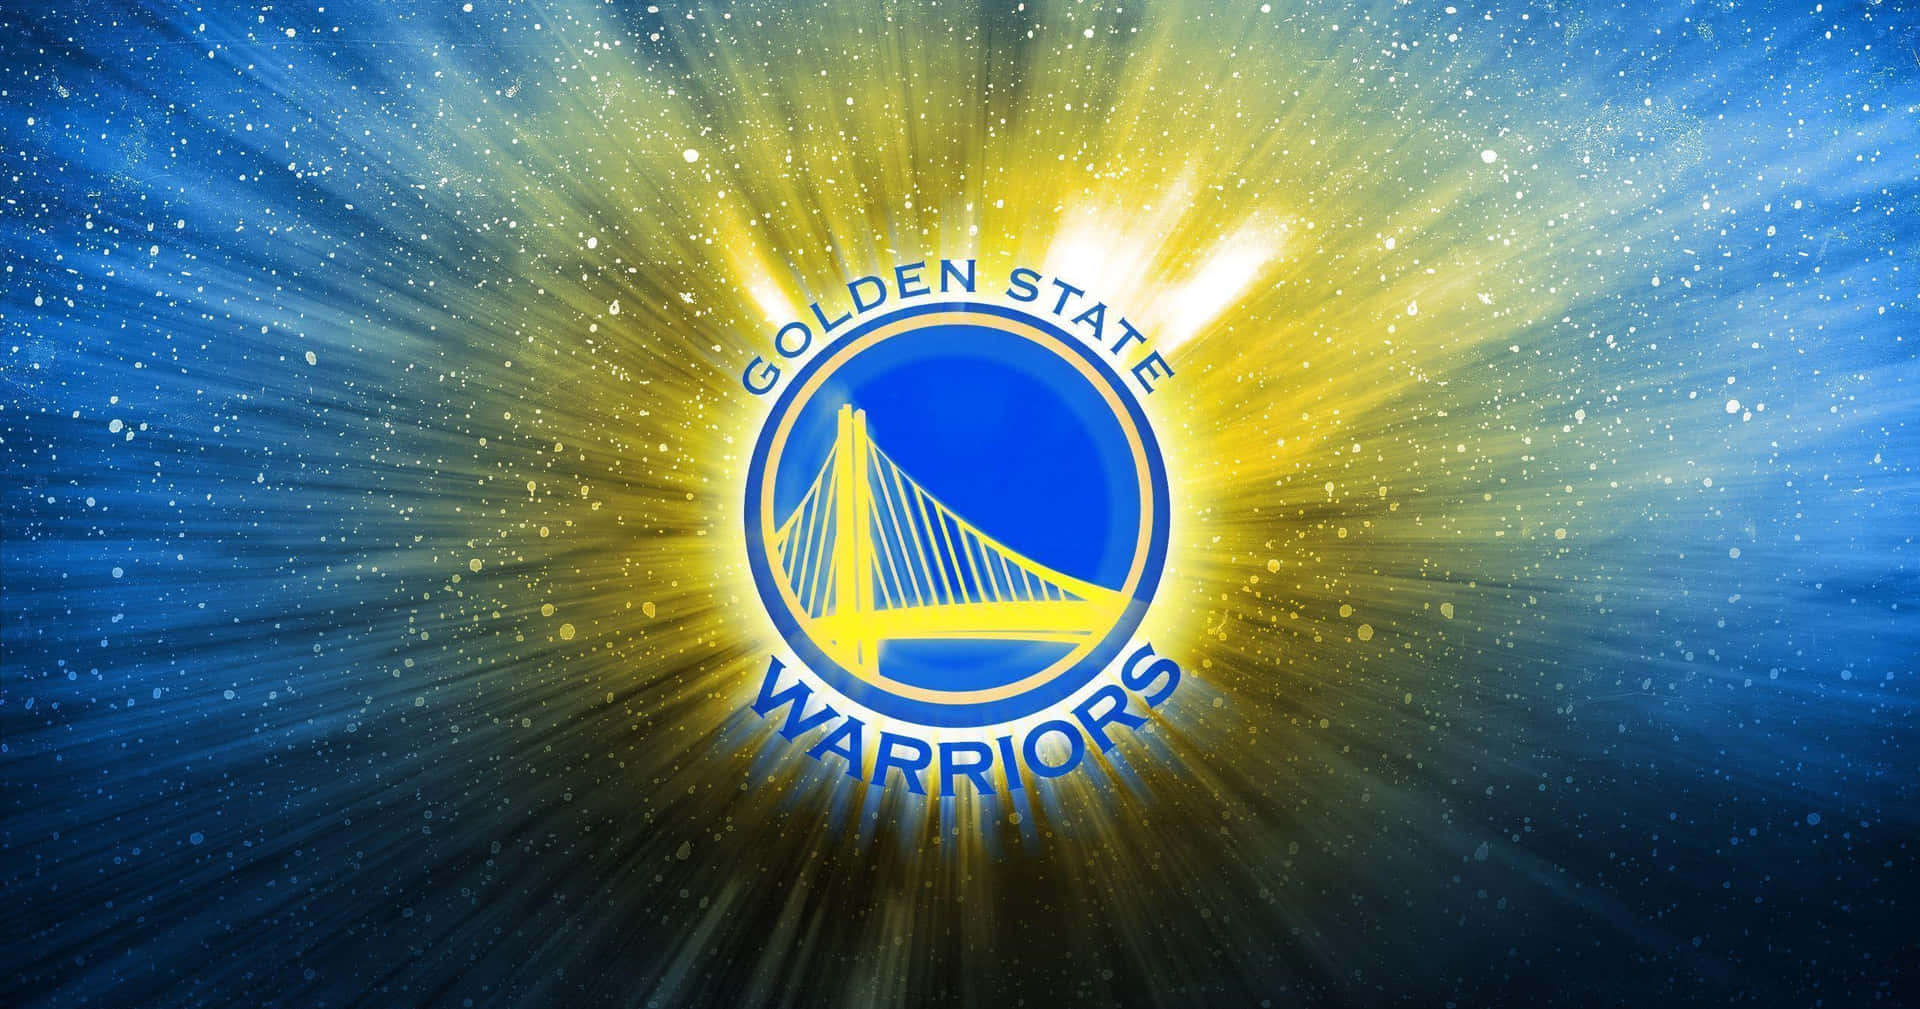 Golden State Warriors Logo Glory Wallpaper